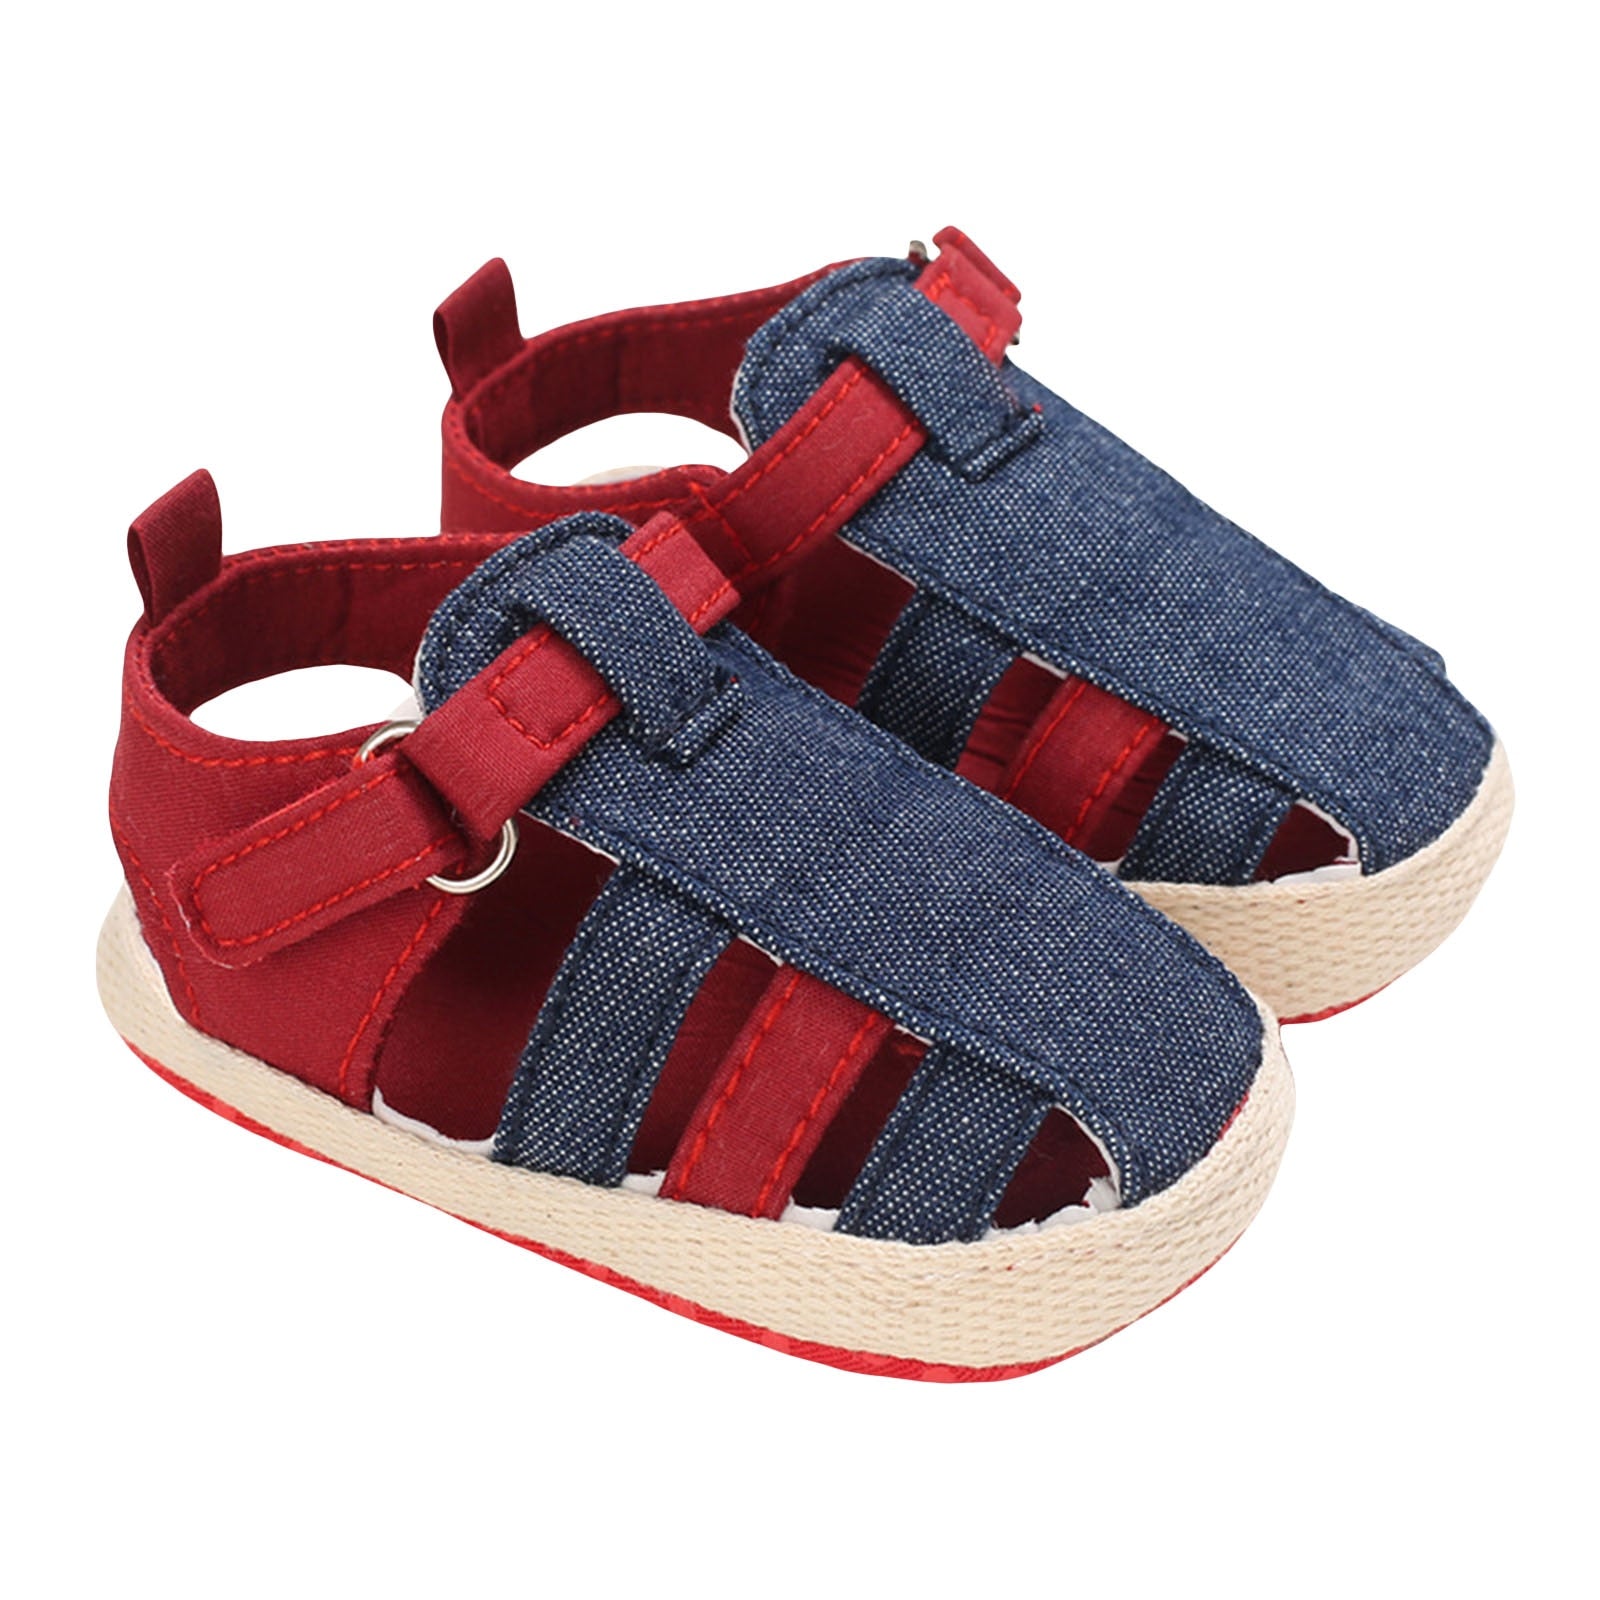 Sapato Super Confortável Sapato Loja Click Certo Azul e Vermelho 0-6 Meses 11cm 